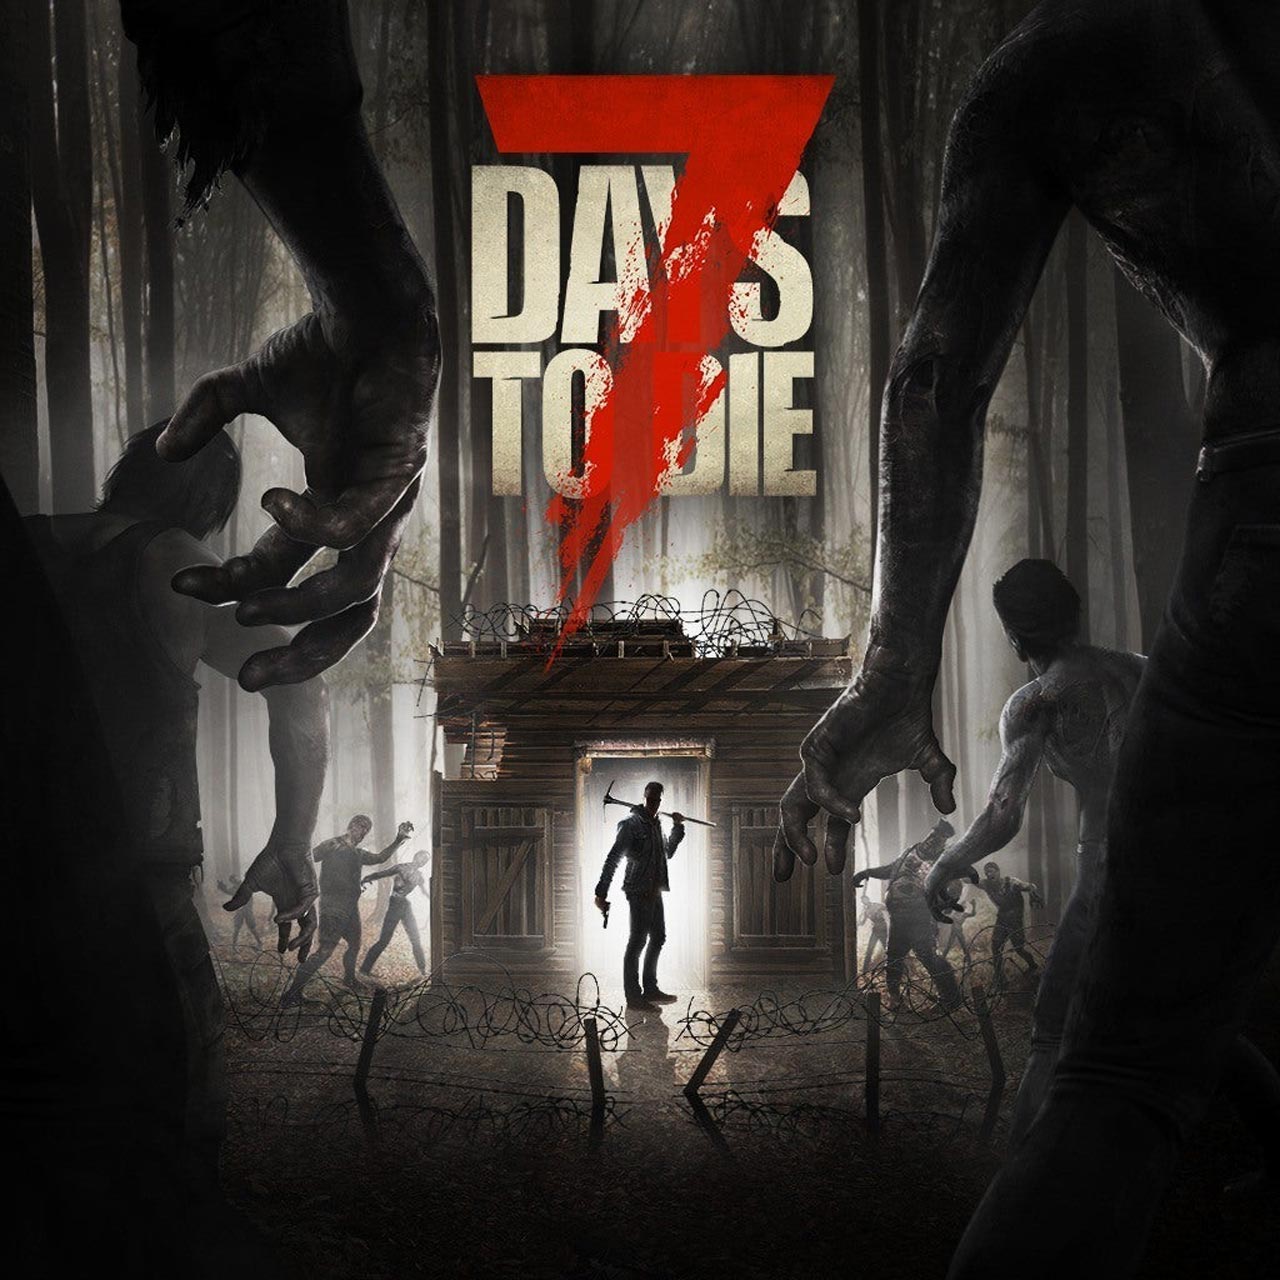 7 Days to Die pc eshteraki 5 - خرید سی دی کی اشتراکی آنلاین بازی 7Days to Die برای کامپیوتر